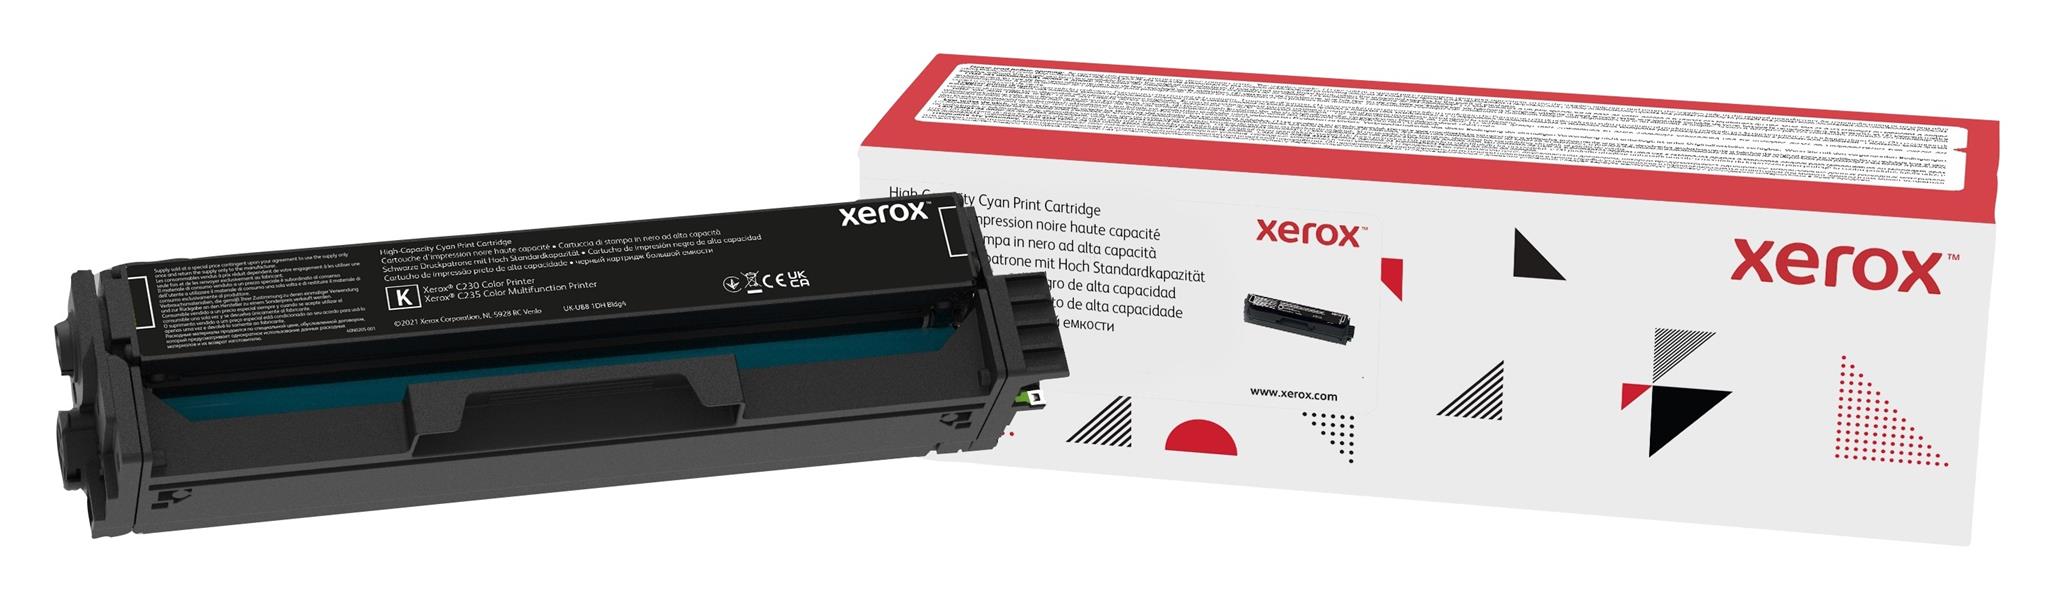 Xerox C230/C235 hoge capaciteit tonercassette, zwart (3.500 paginas)